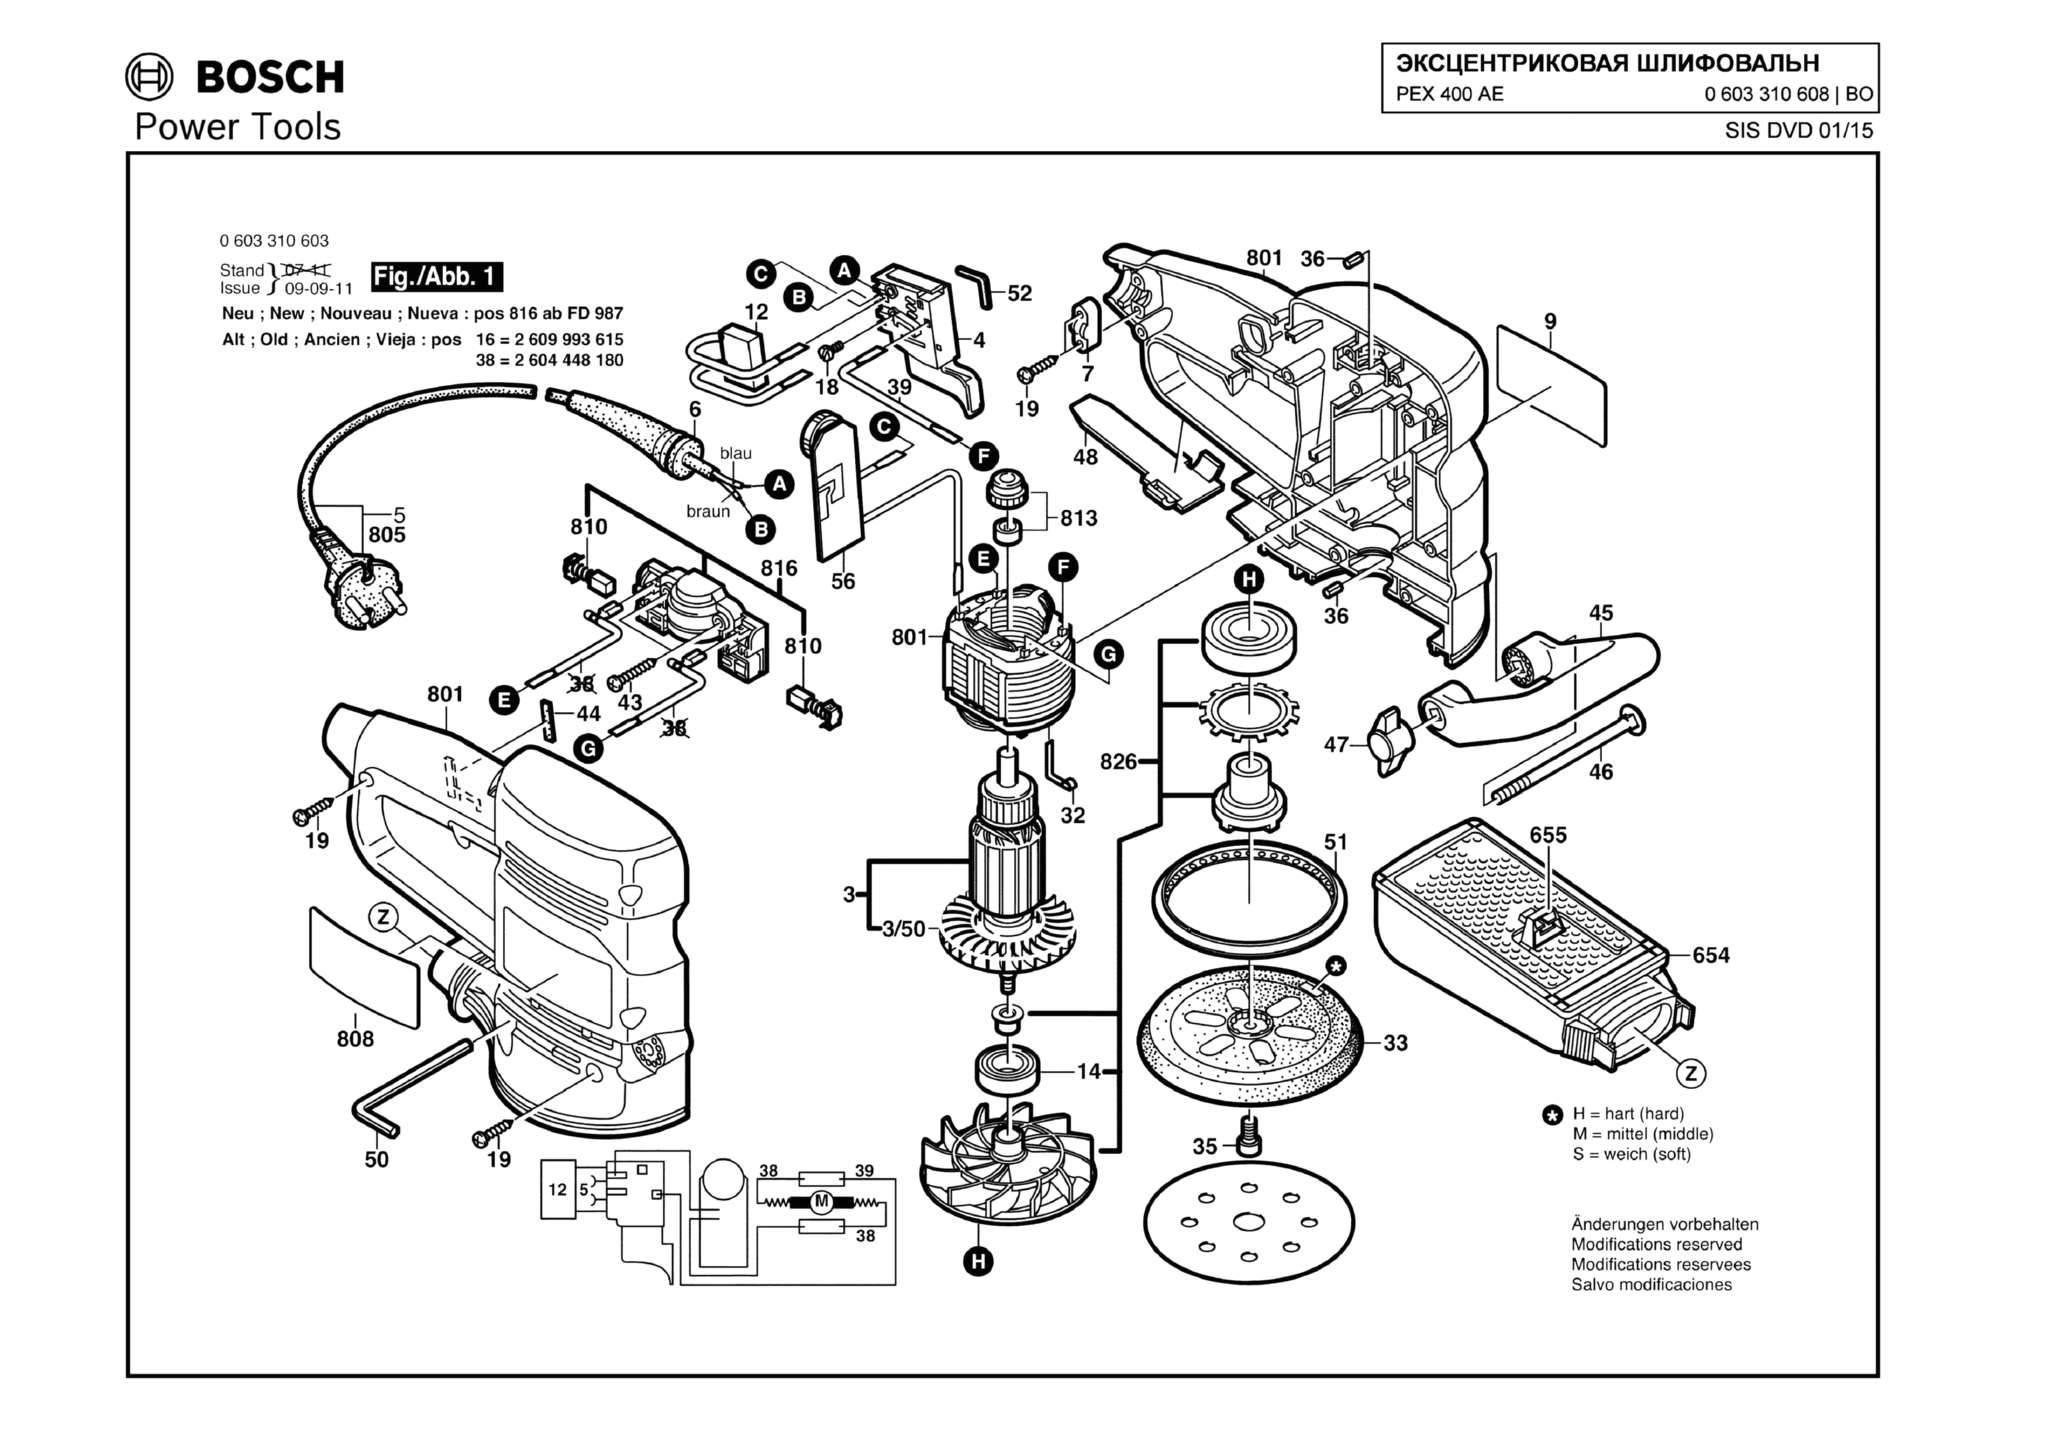 Запчасти, схема и деталировка Bosch PEX 400 AE (ТИП 0603310608)